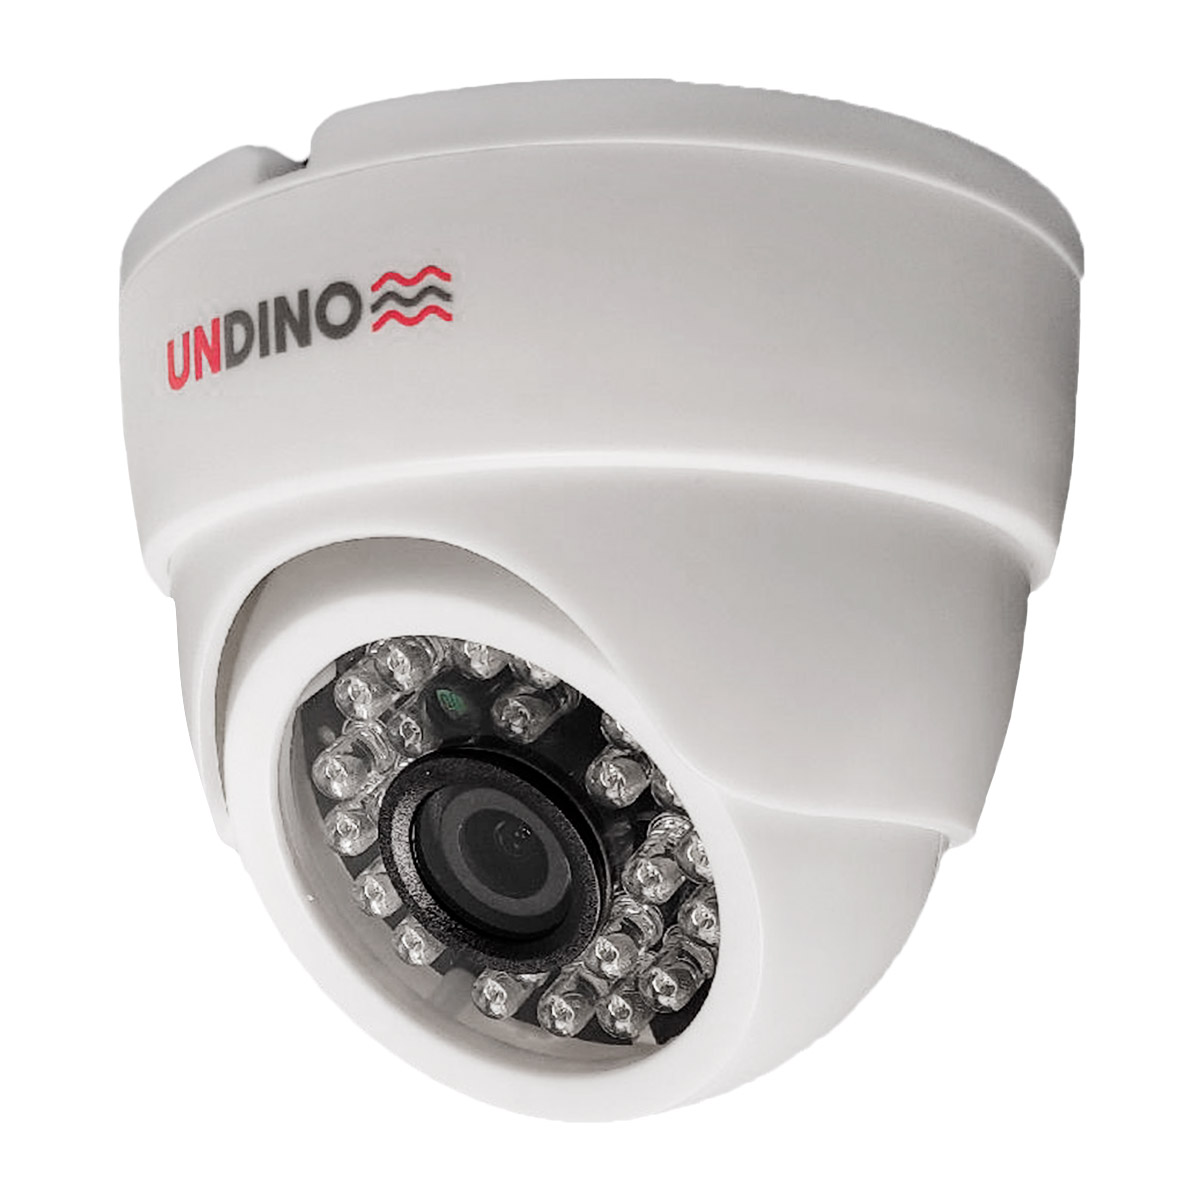 Купольная камера видеонаблюдения IP 2Мп Undino UD-ED02IP цифровая с POE питанием ная купольная ip сетевая камера с ик подсветкой mt dw1080ip20vsg poe audio 2 7 13 5mm